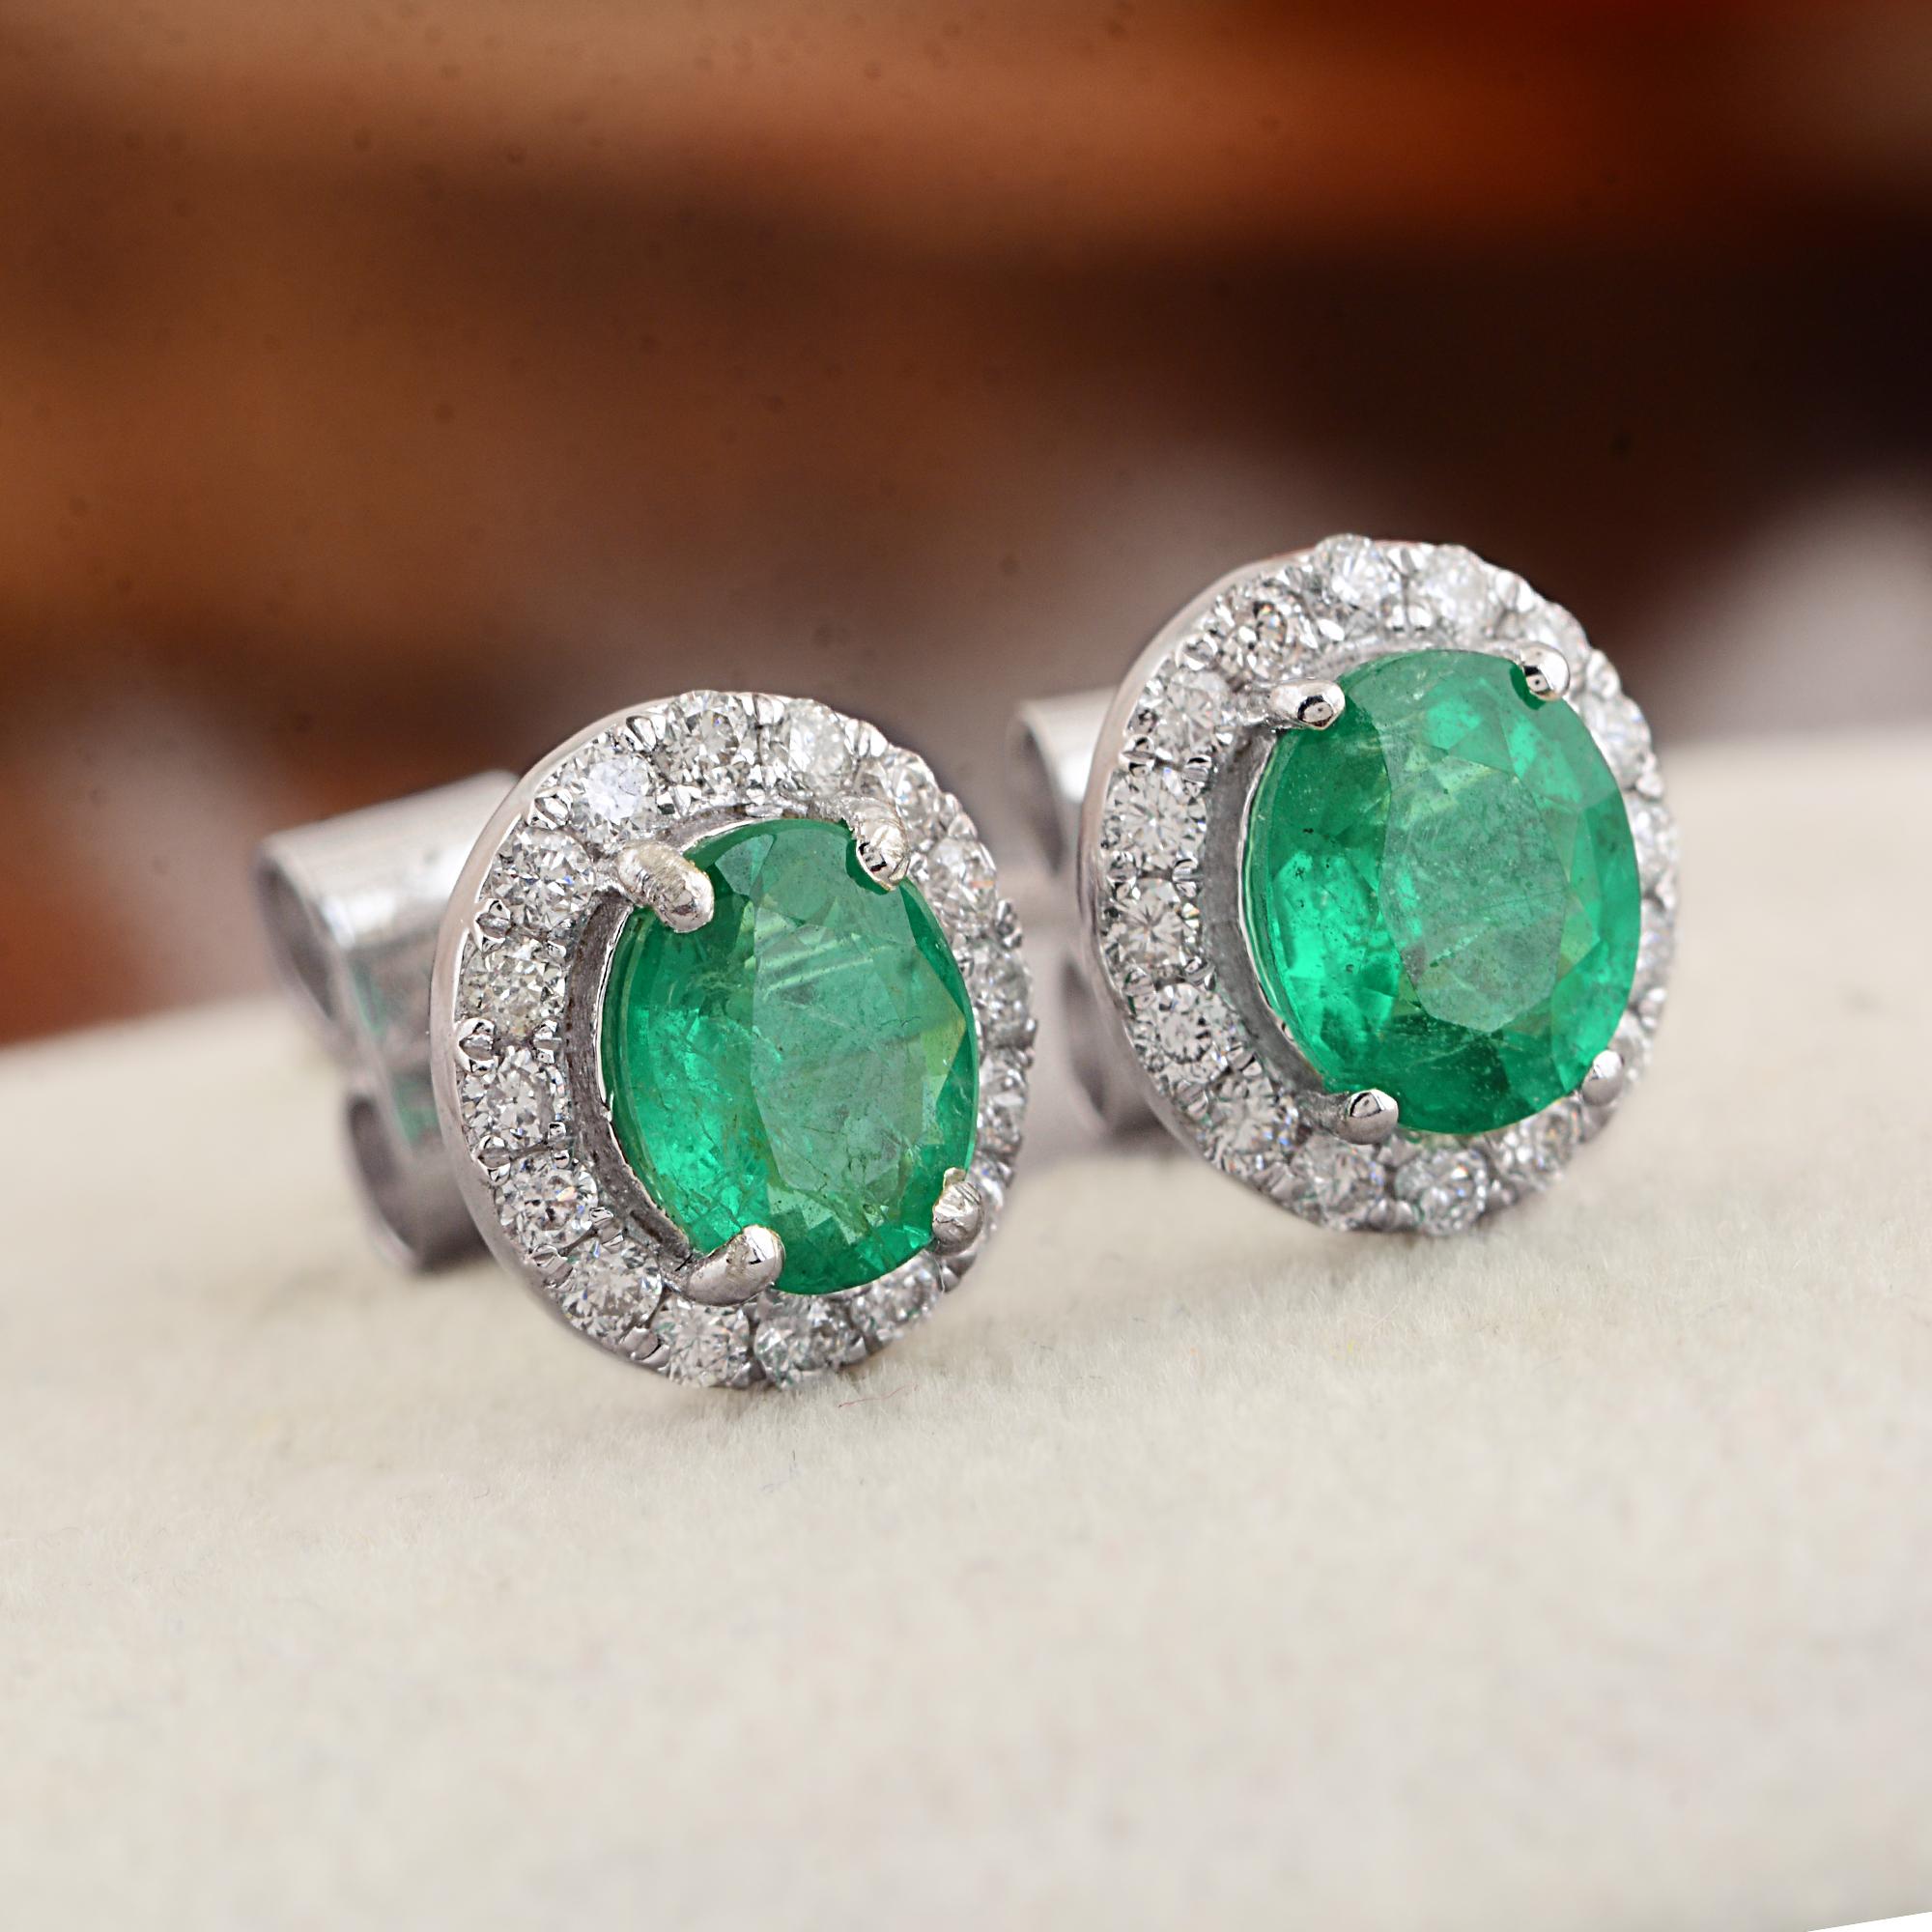 Modern Oval Zambian Emerald Gemstone Stud Earrings Diamond 14 Karat White Gold Jewelry For Sale